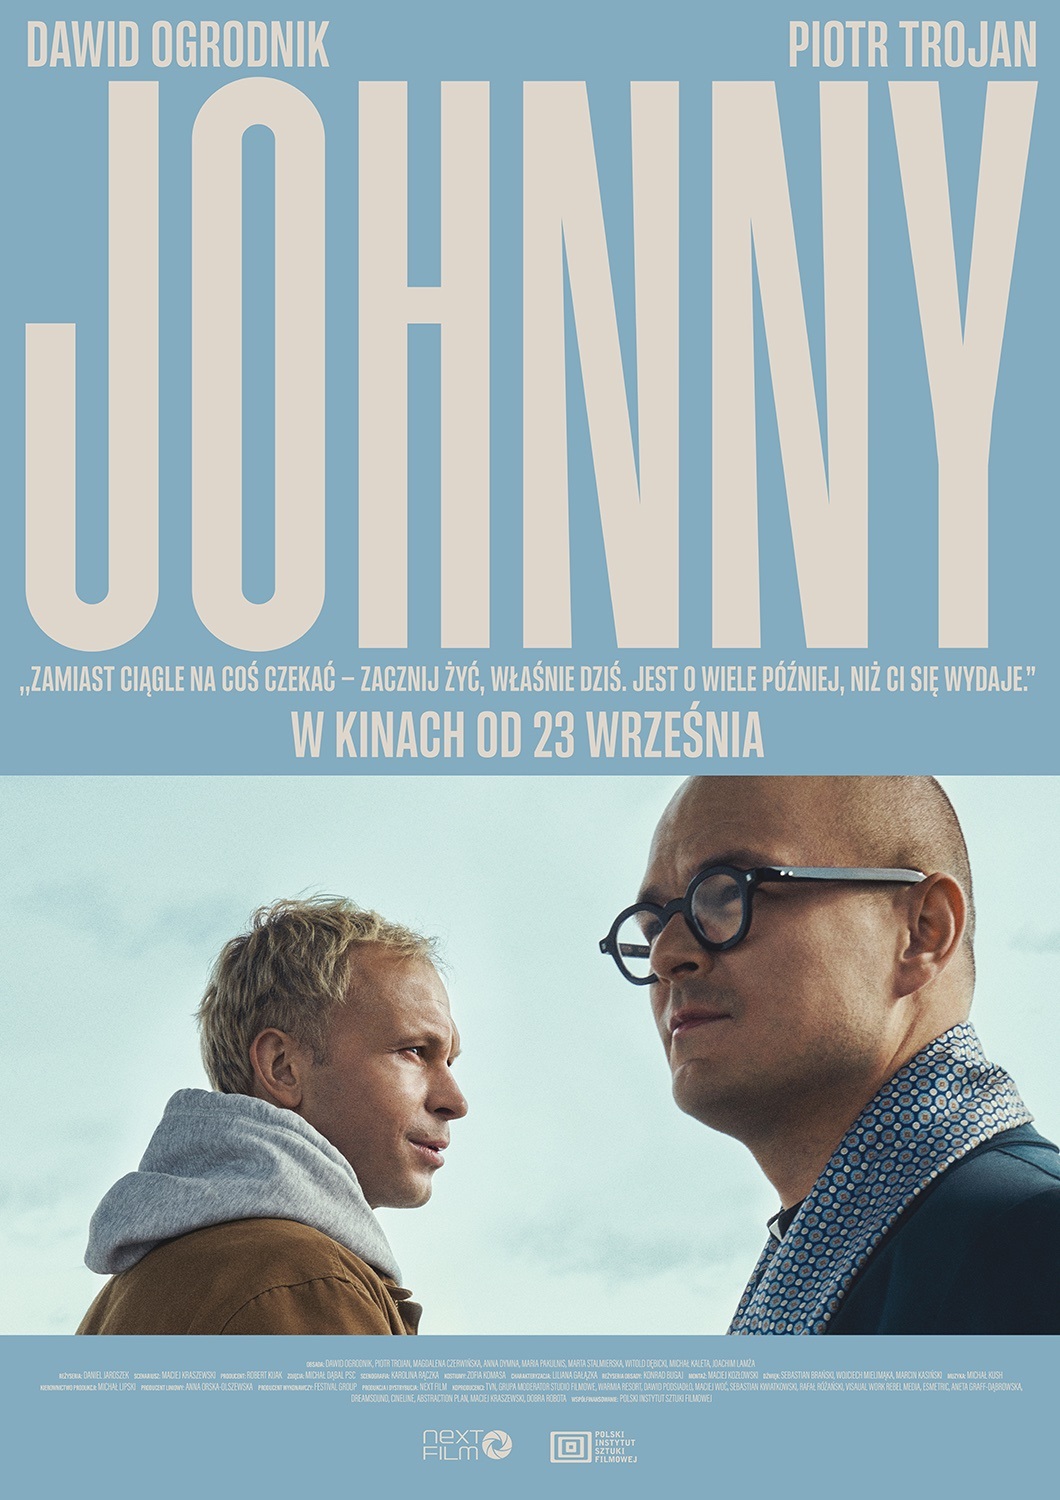 Johnny (2022) จอห์นนี่